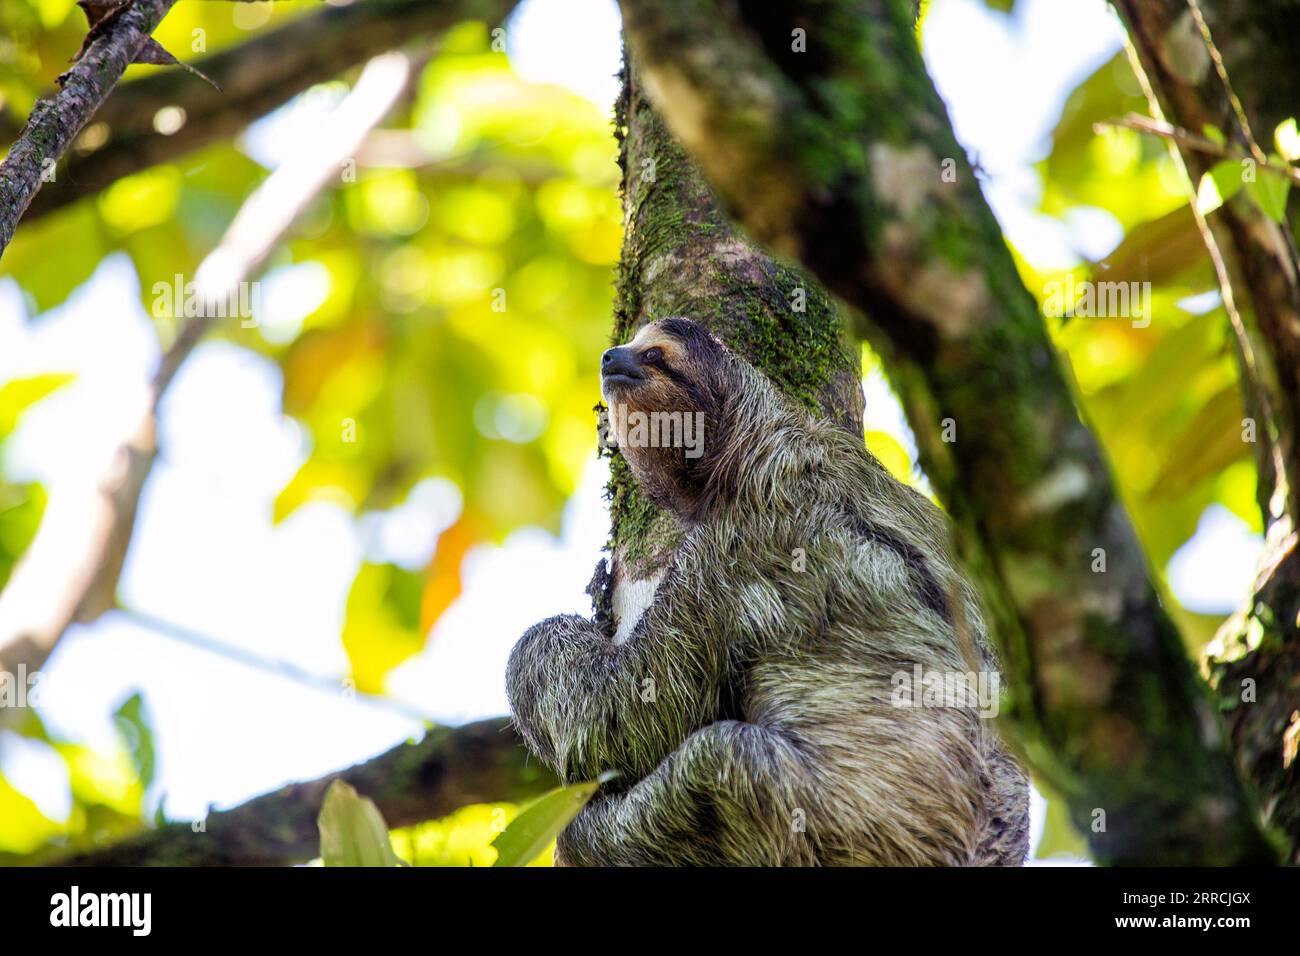 Entdecken Sie die entzückende dreizehige Faultiere aus Costa Ricas üppigen Regenwäldern. Der langsame Charme zieht alle in seinen Bann. Stockfoto